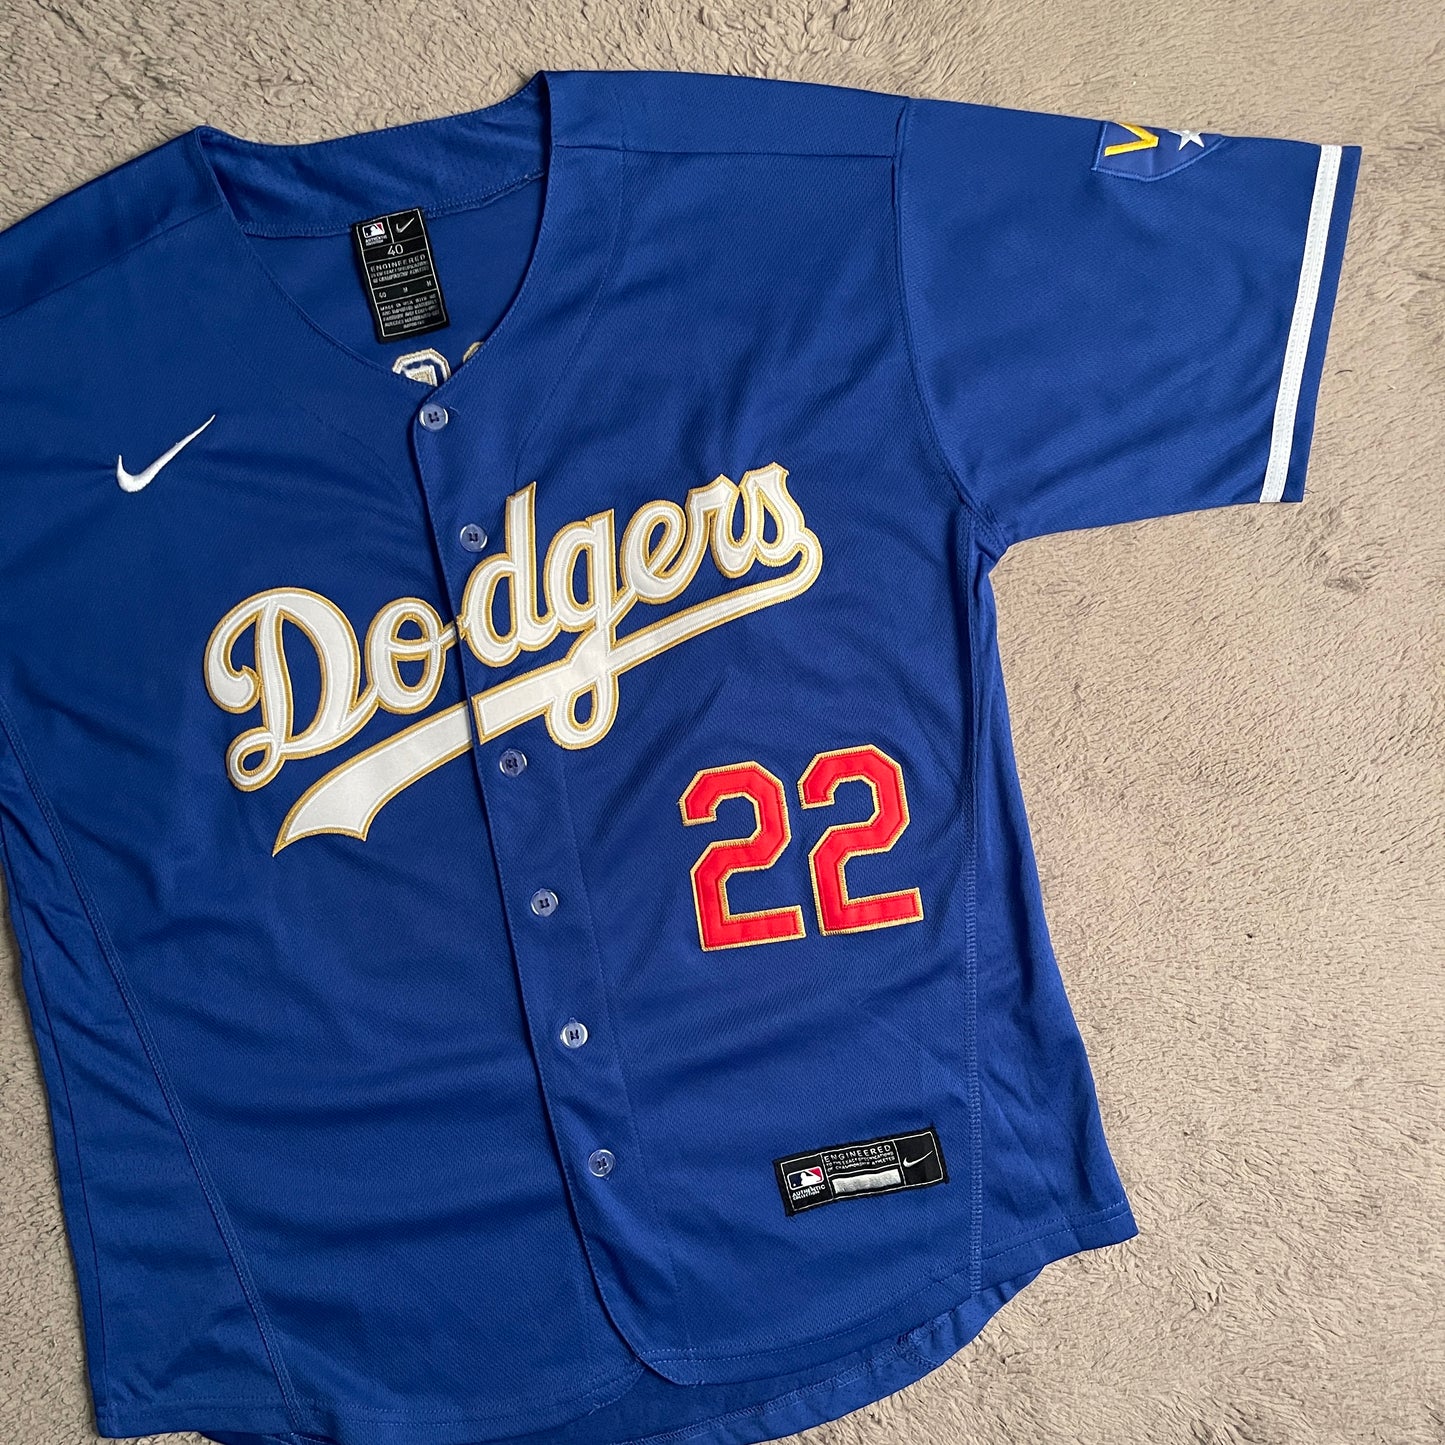 2020 MLB Champions LA Dodgers Jersey 22 Kershaw (M)